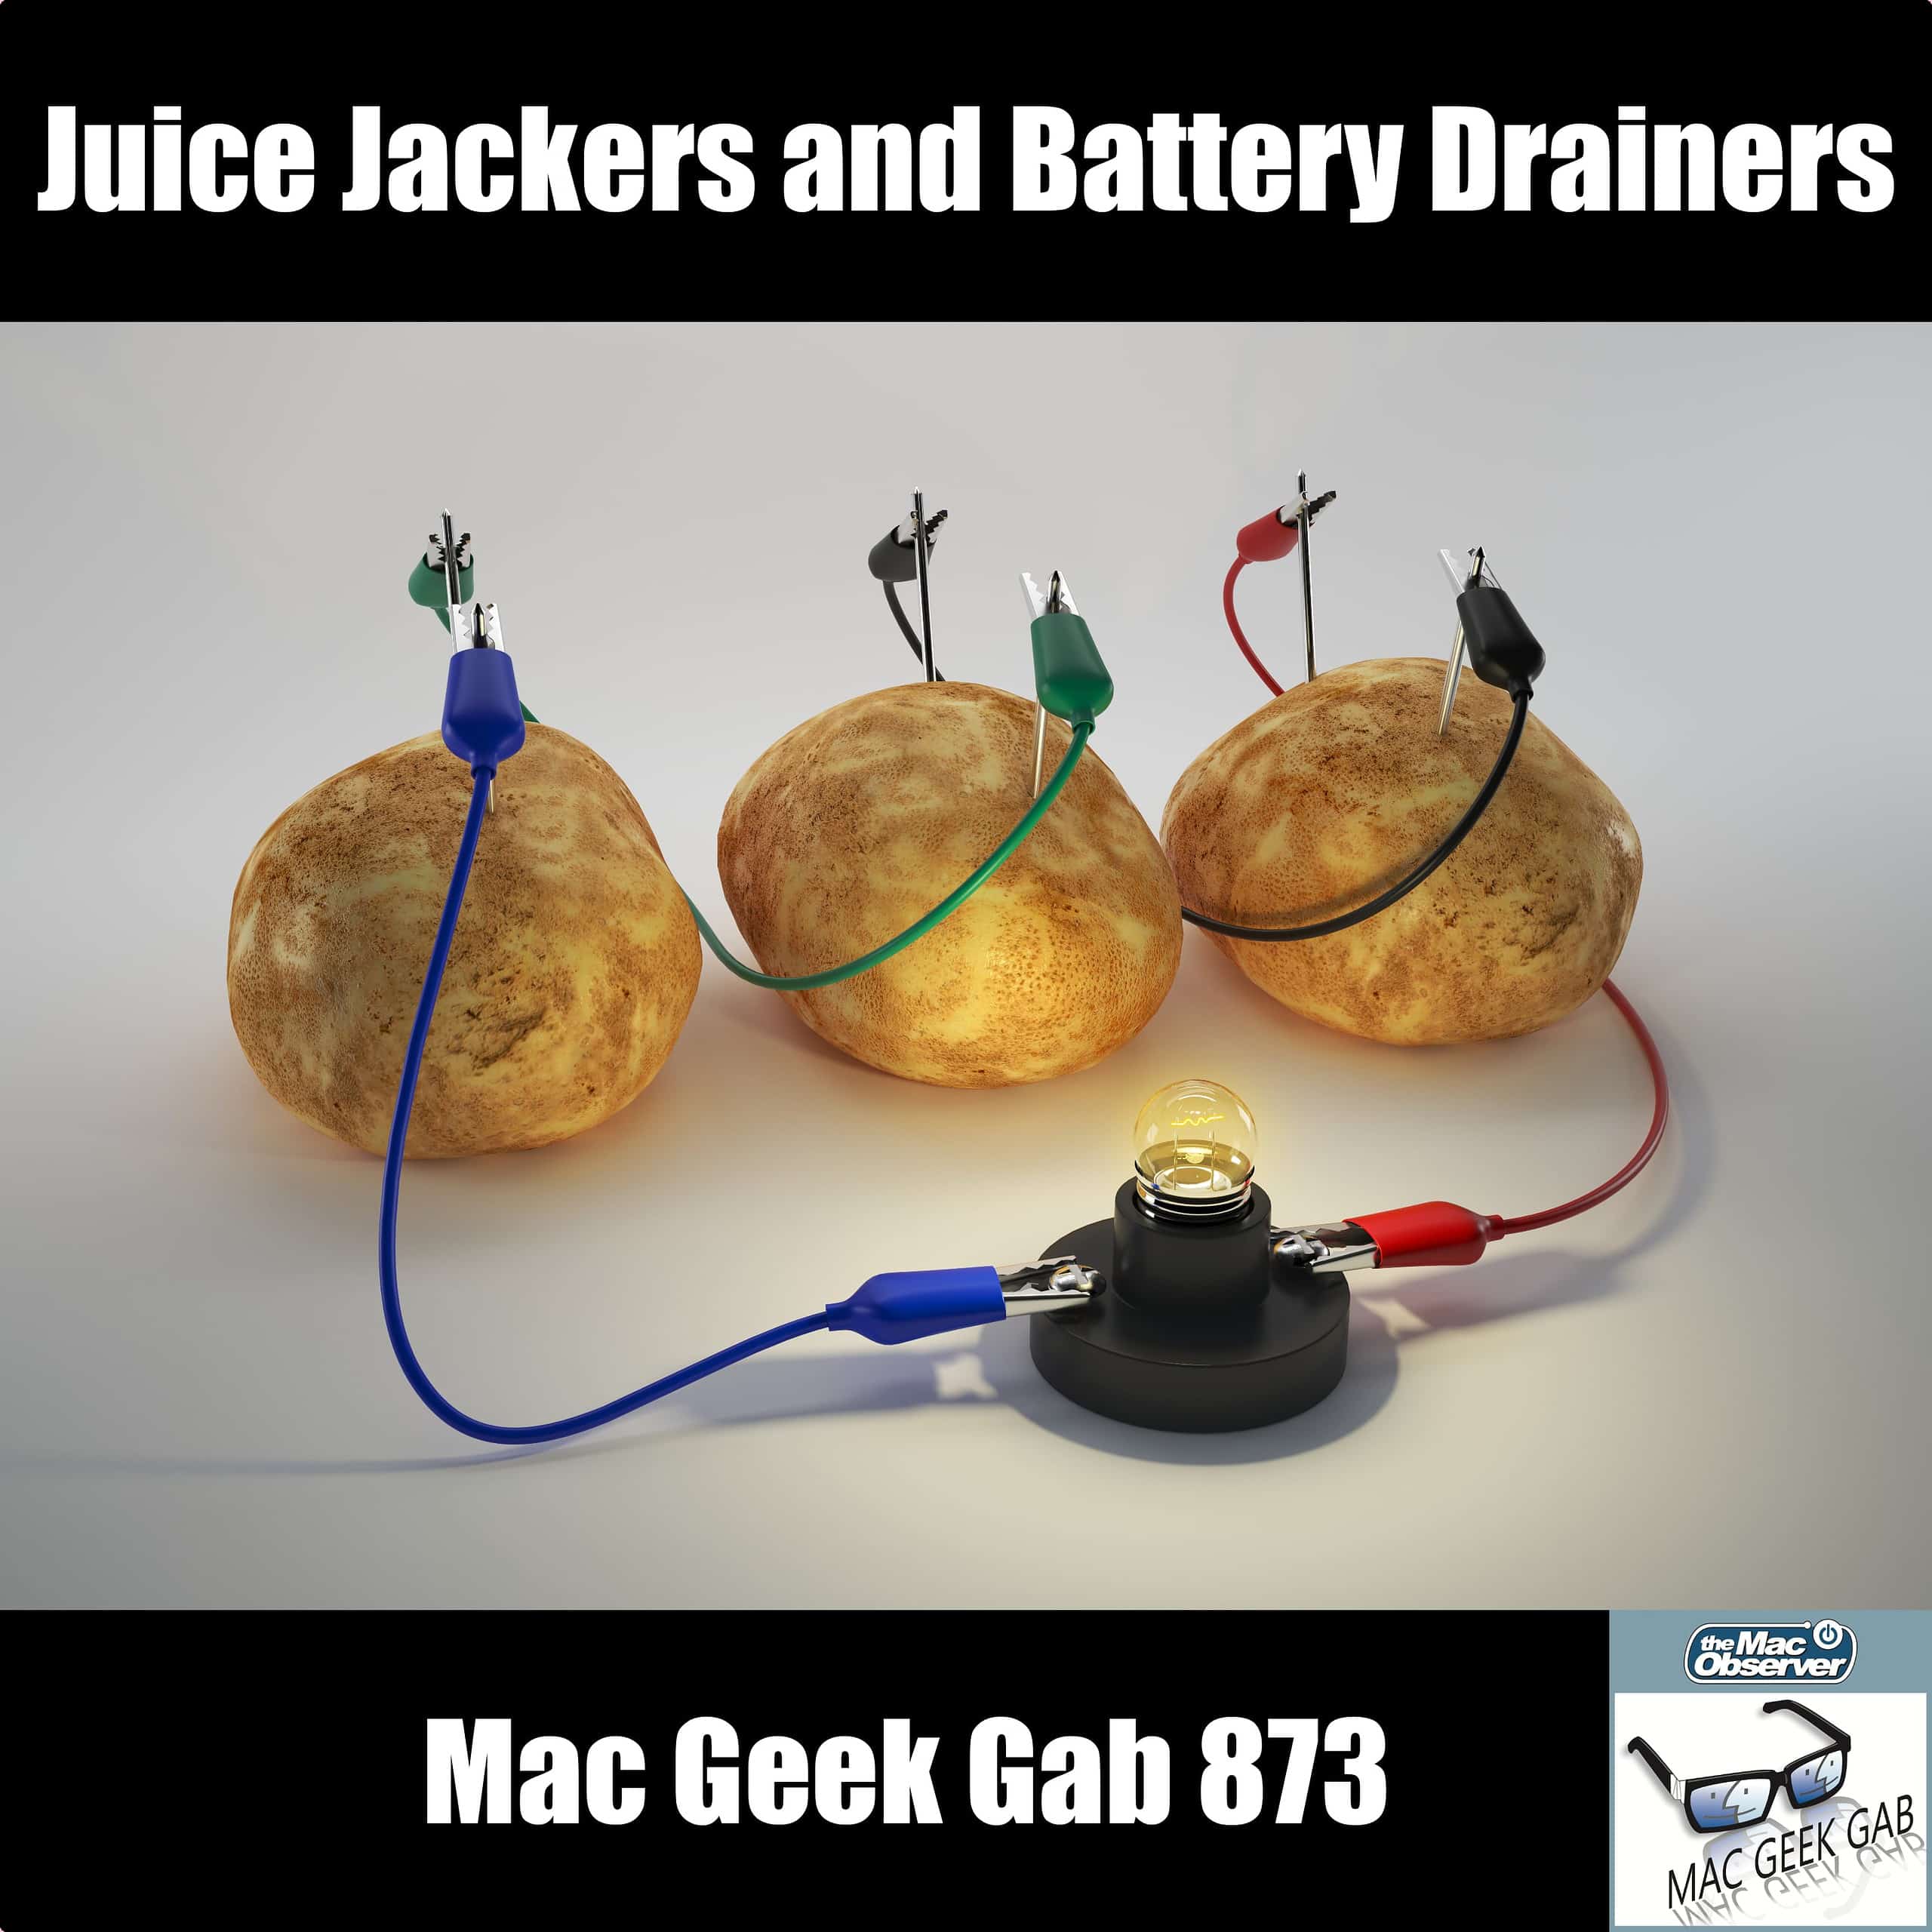 Juice Jackers and Battery Drainers – Mac Geek Gab 873